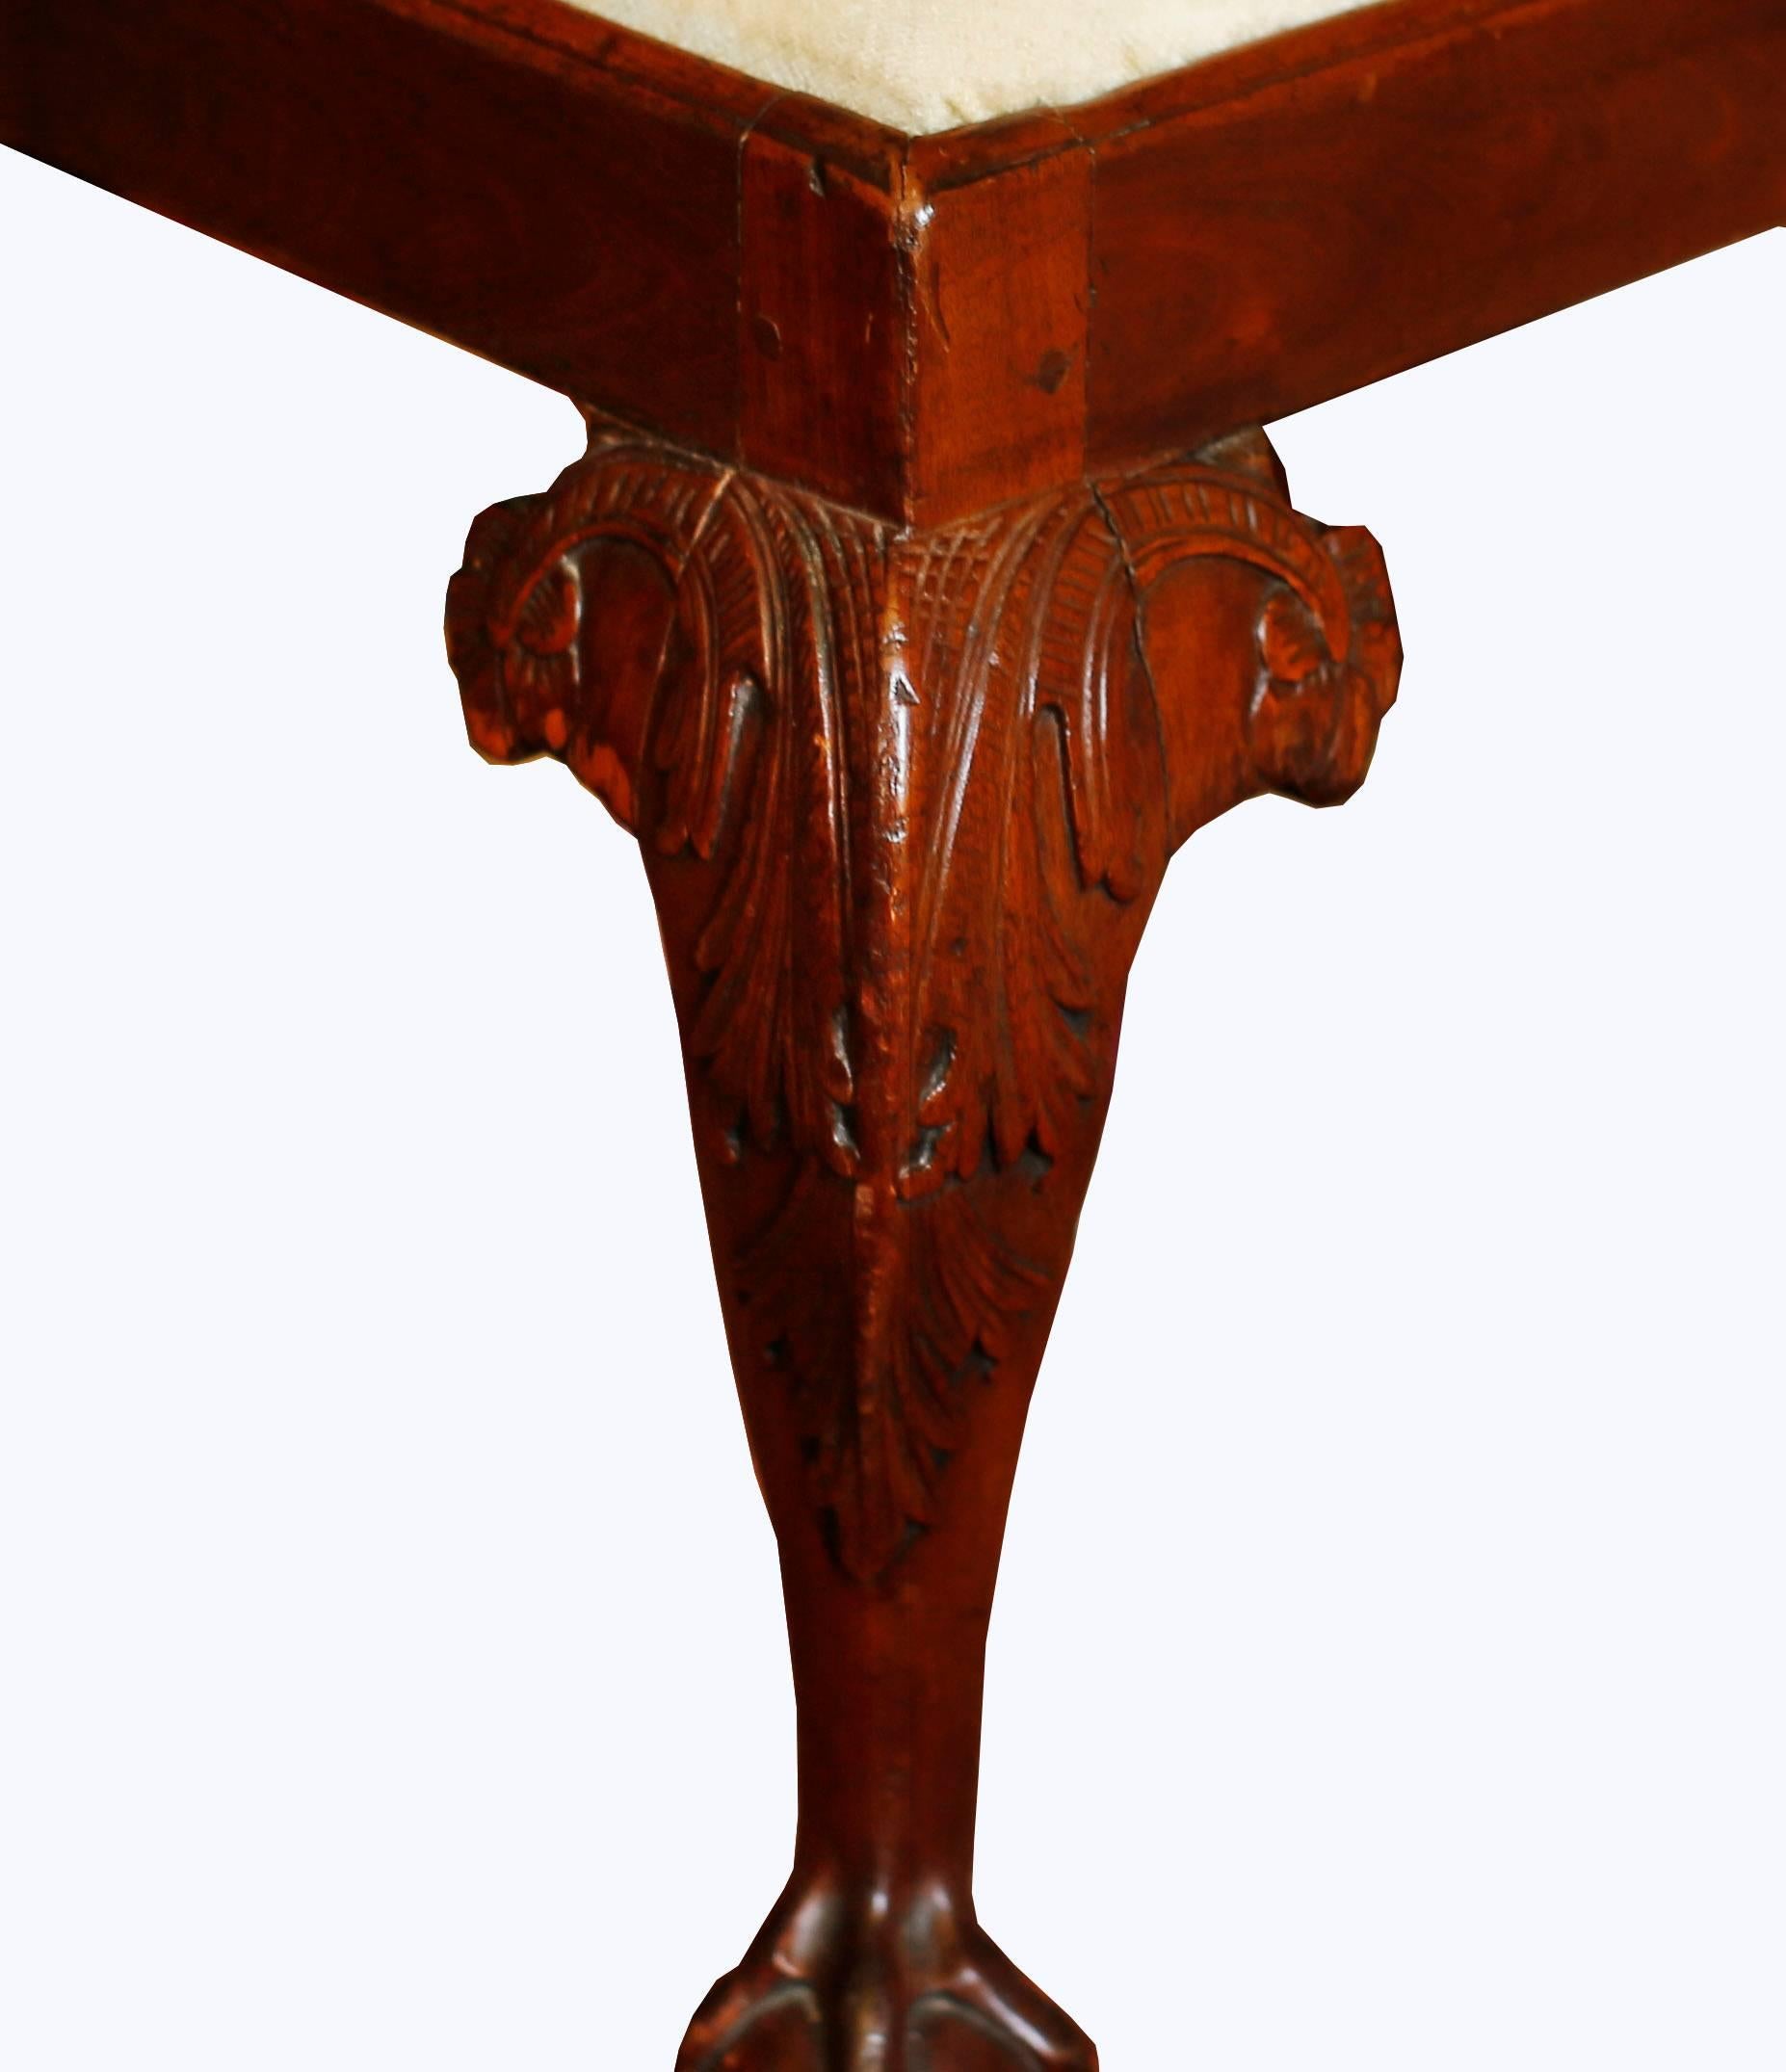 Ein hübscher Stuhl aus der Mitte des 18. Jahrhunderts mit einer geformten, geschwungenen Oberschiene, die in geschnitzten, verschnörkelten Armen endet. Drei gedrehte Säulen tragen das Geländer mit durchbrochenen Leisten, zwischen denen sich Bänder